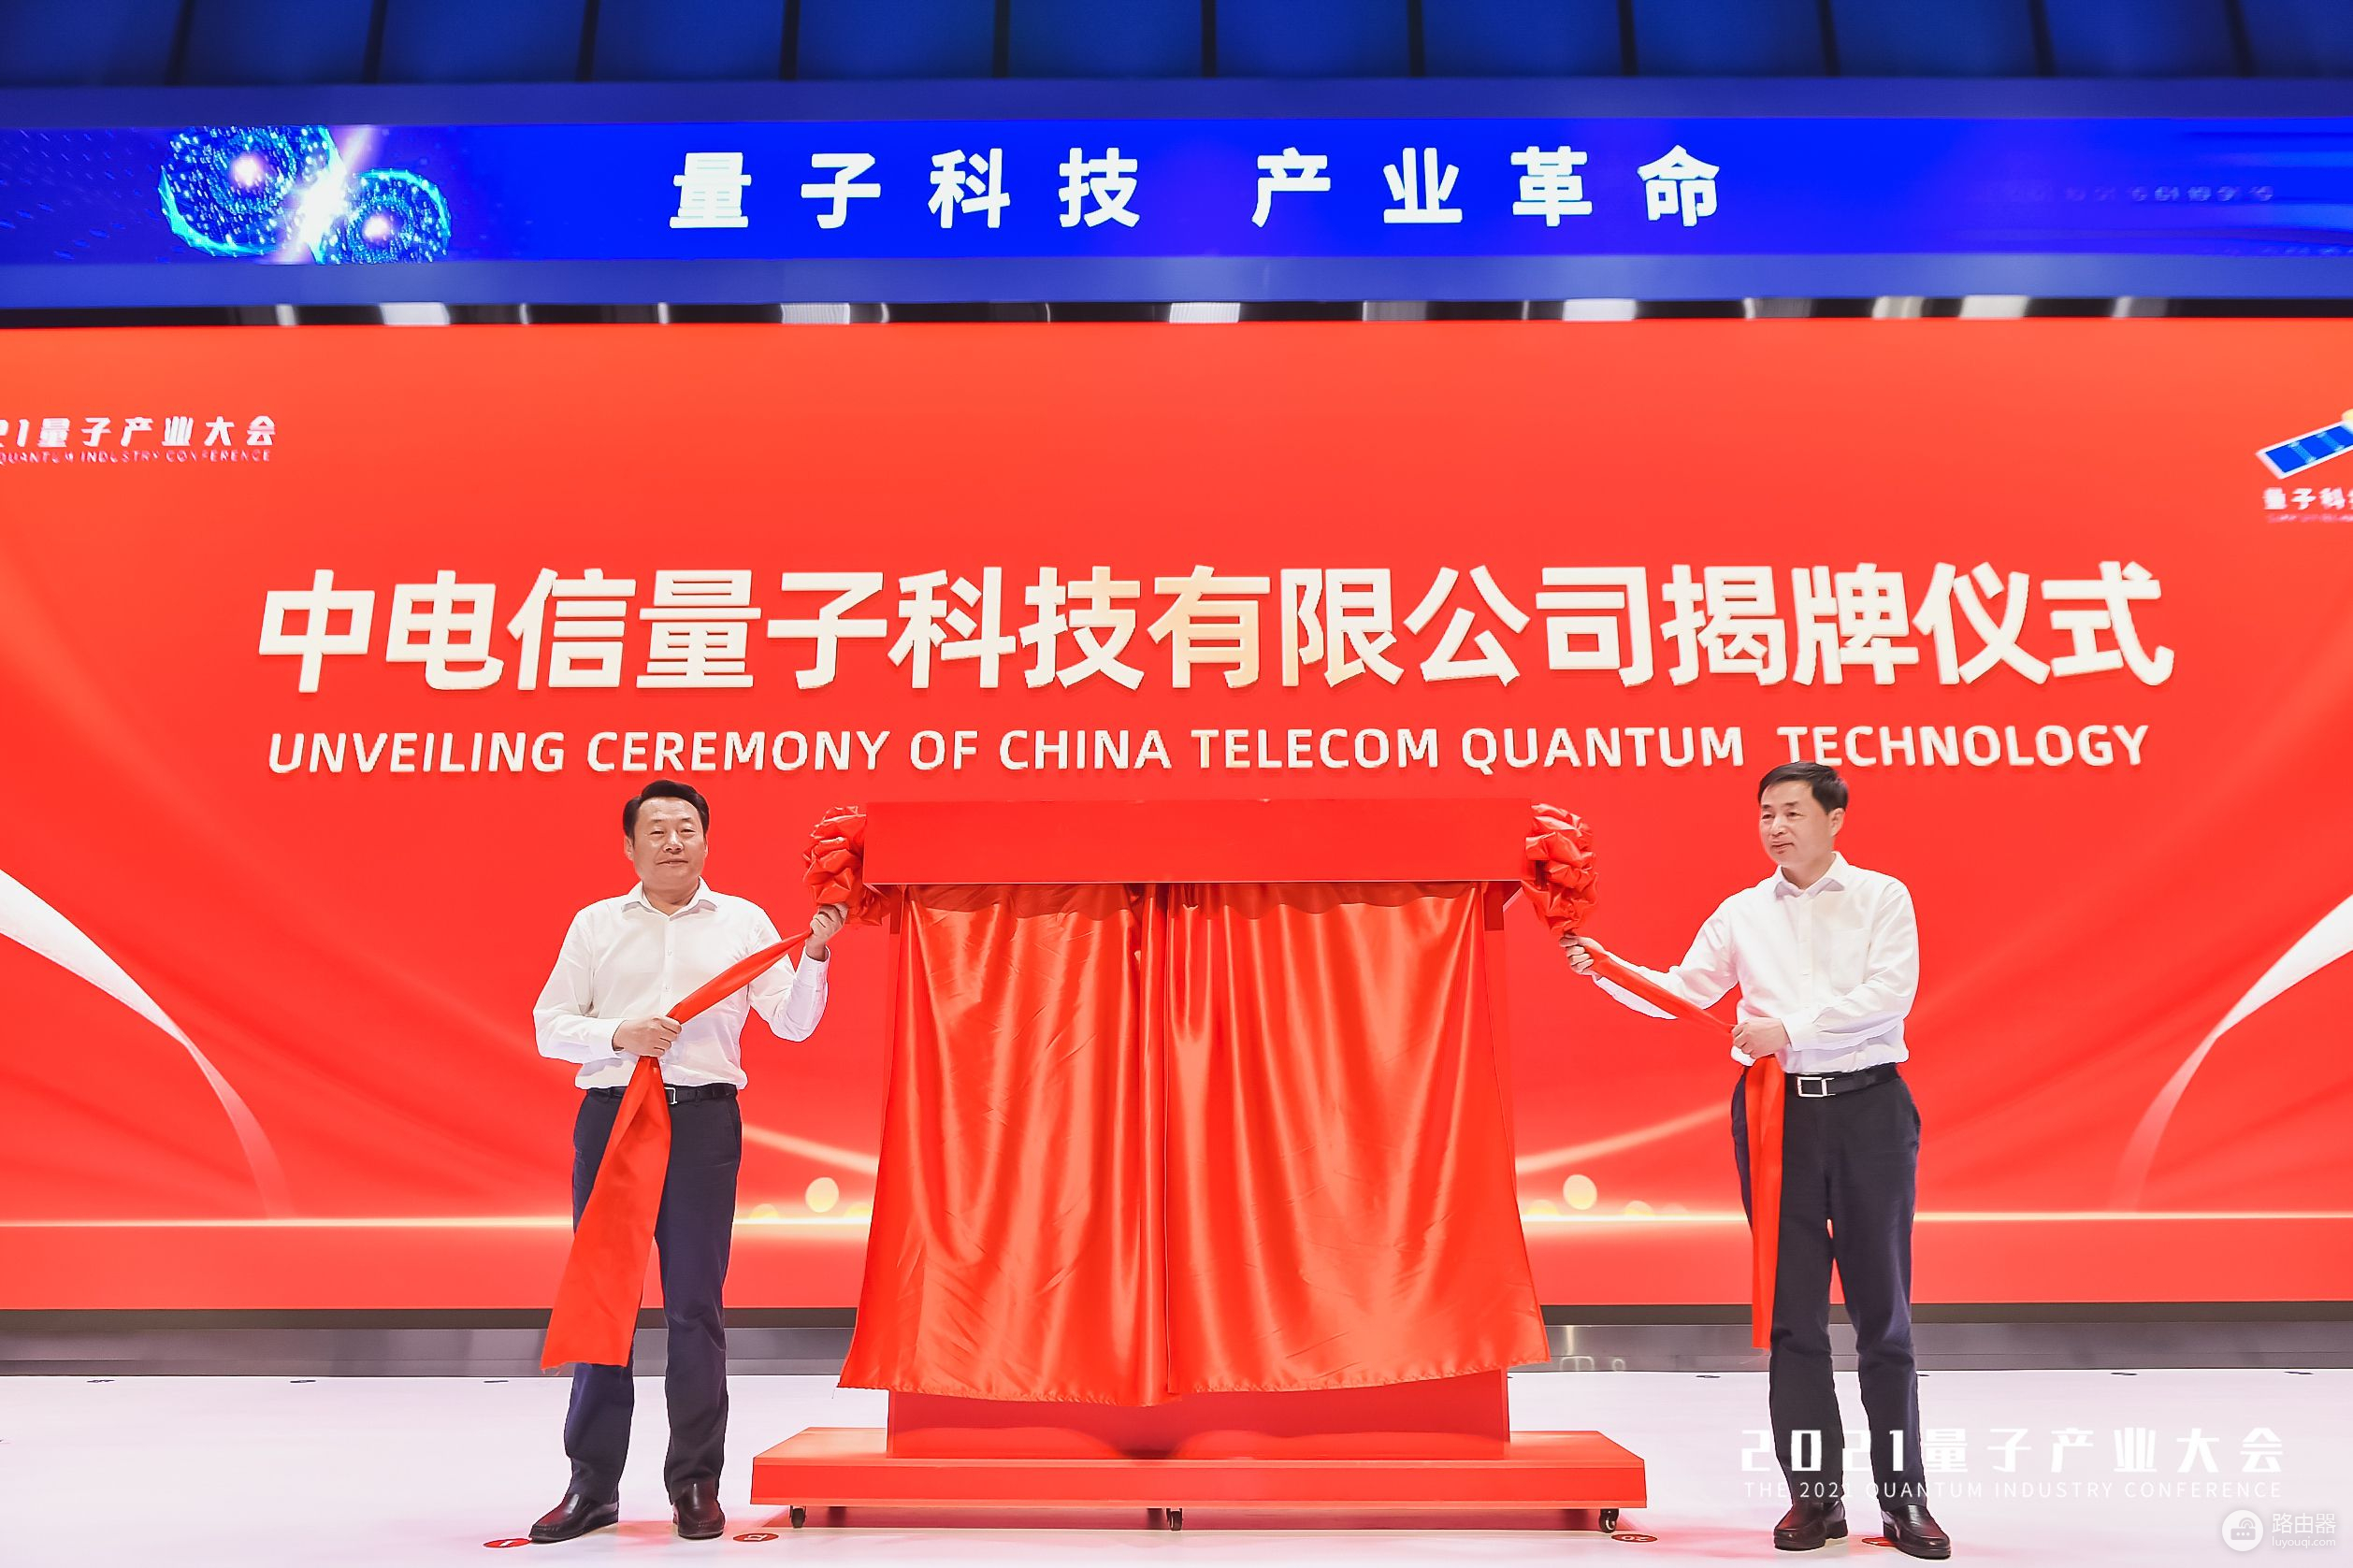 中电信量子公司正式揭牌(中国电信量子公司)